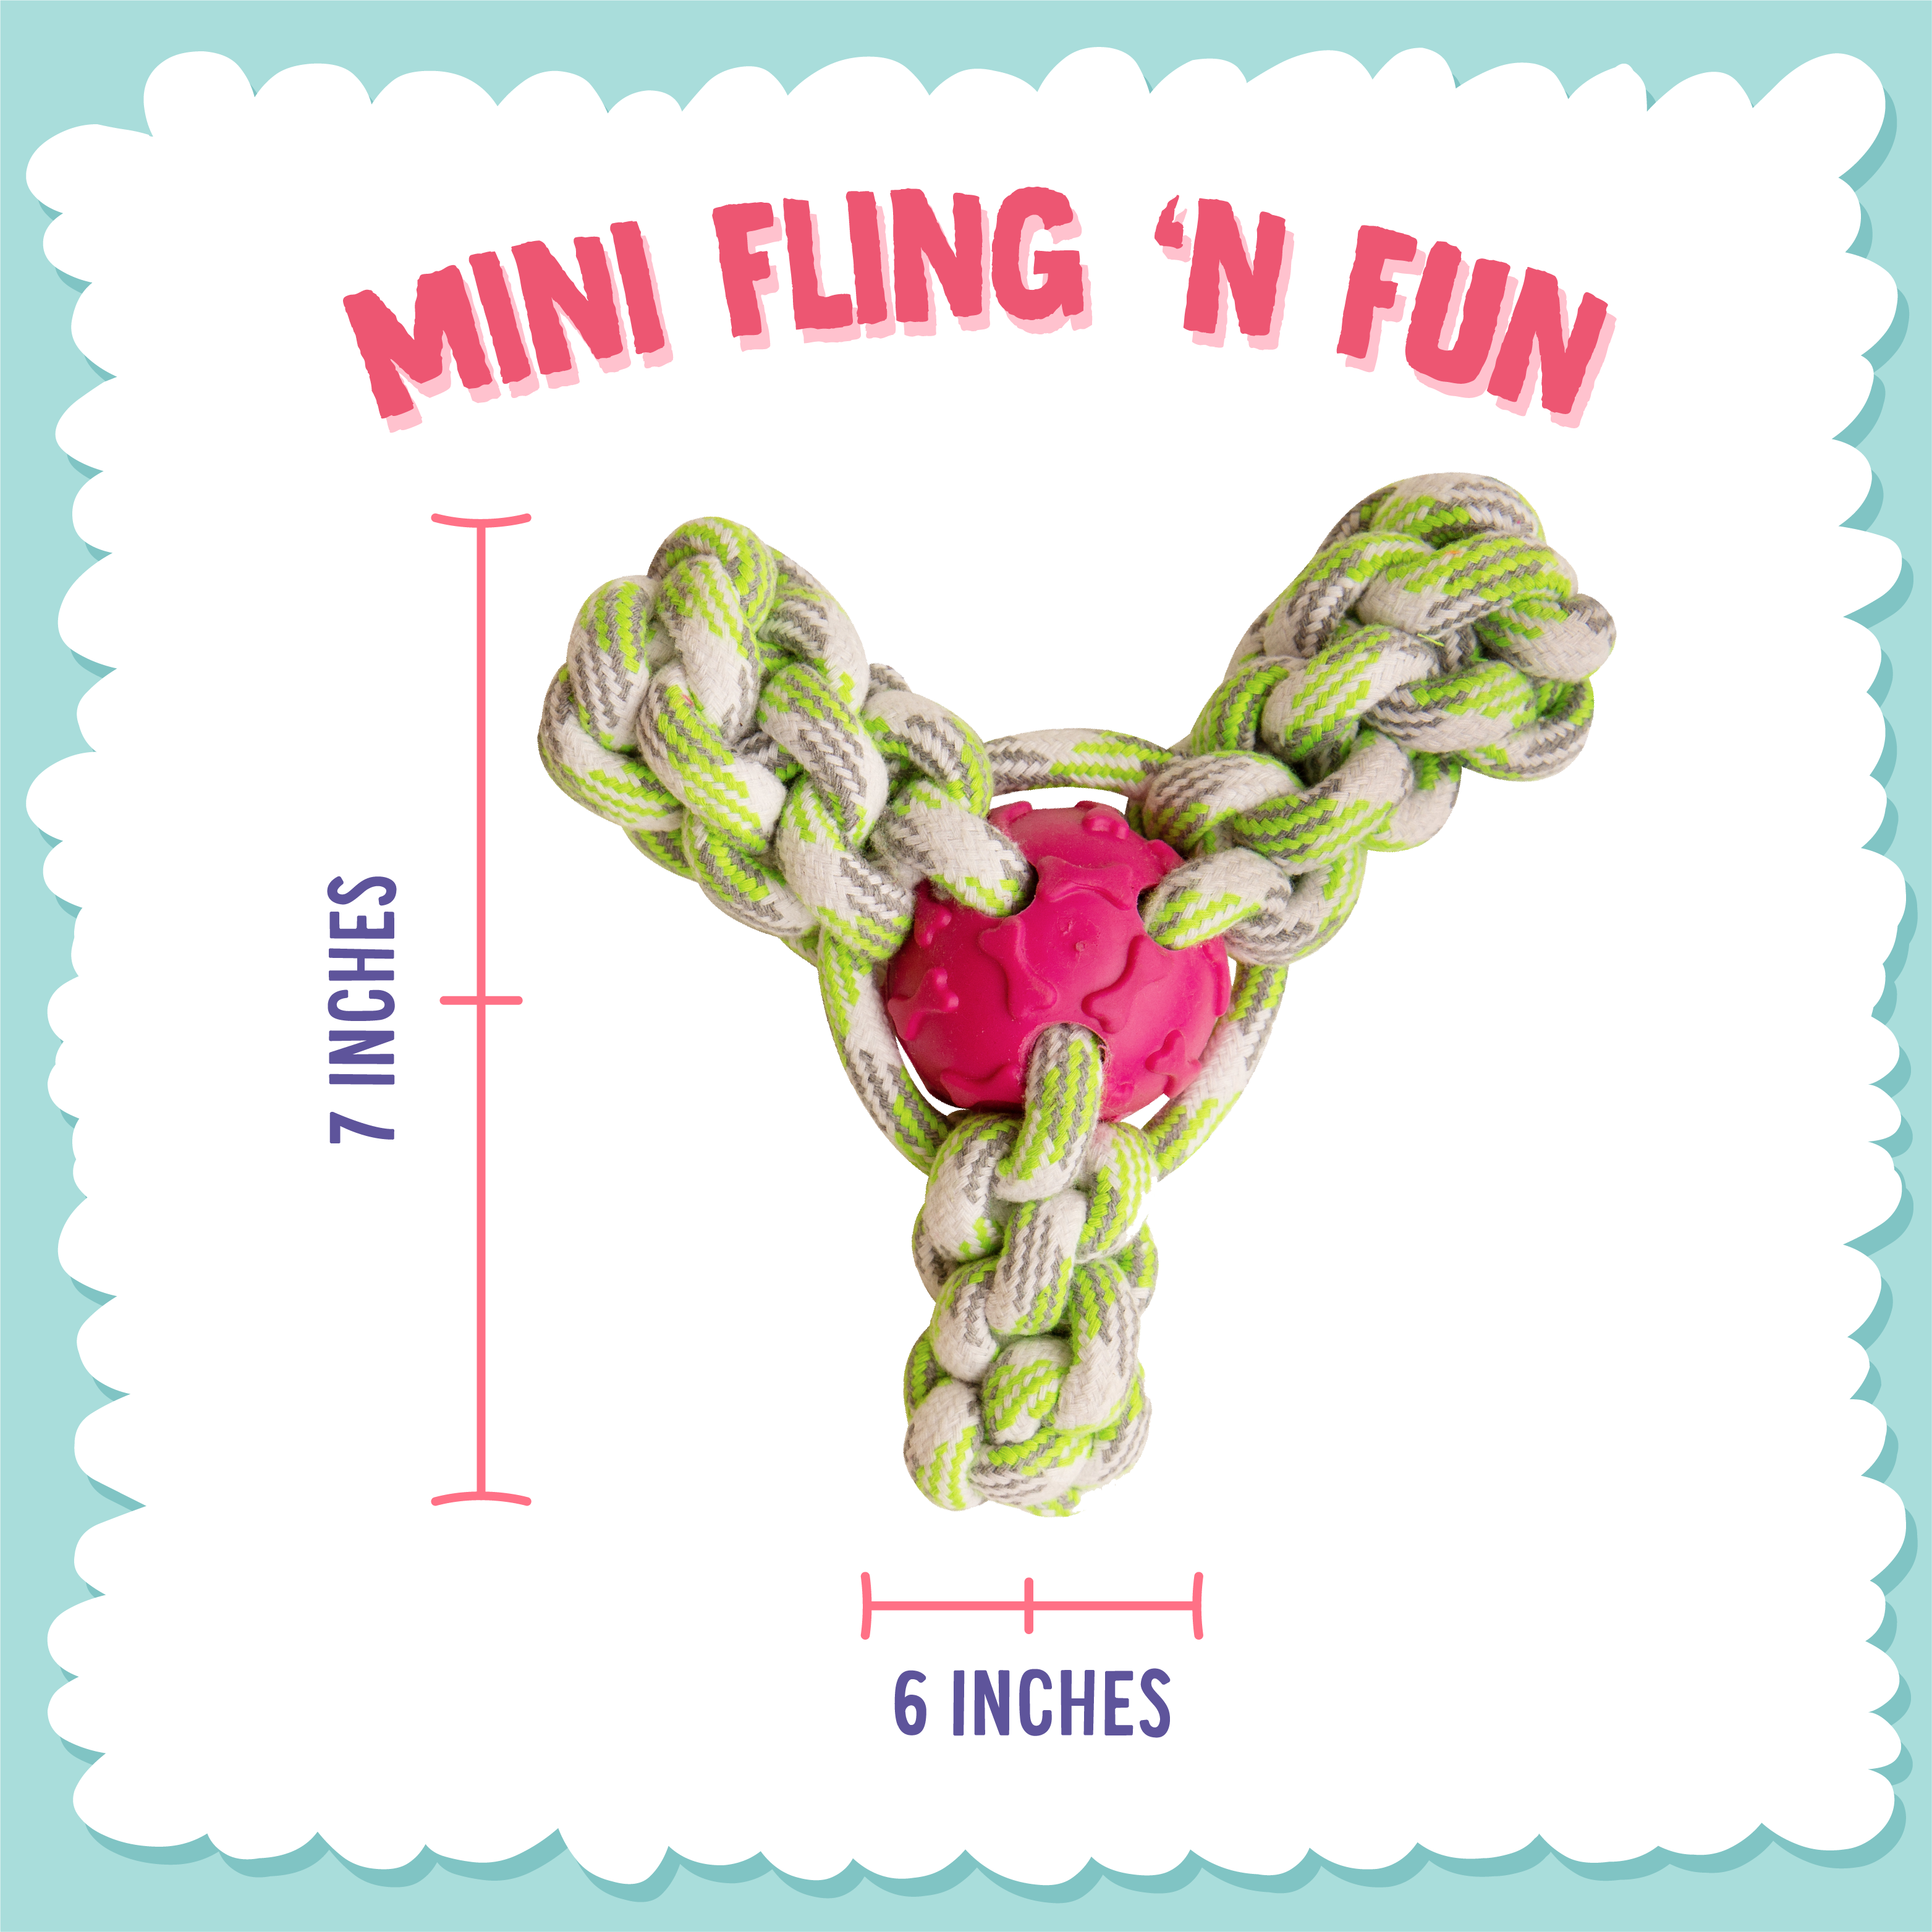 Mini Fling 'N Fun